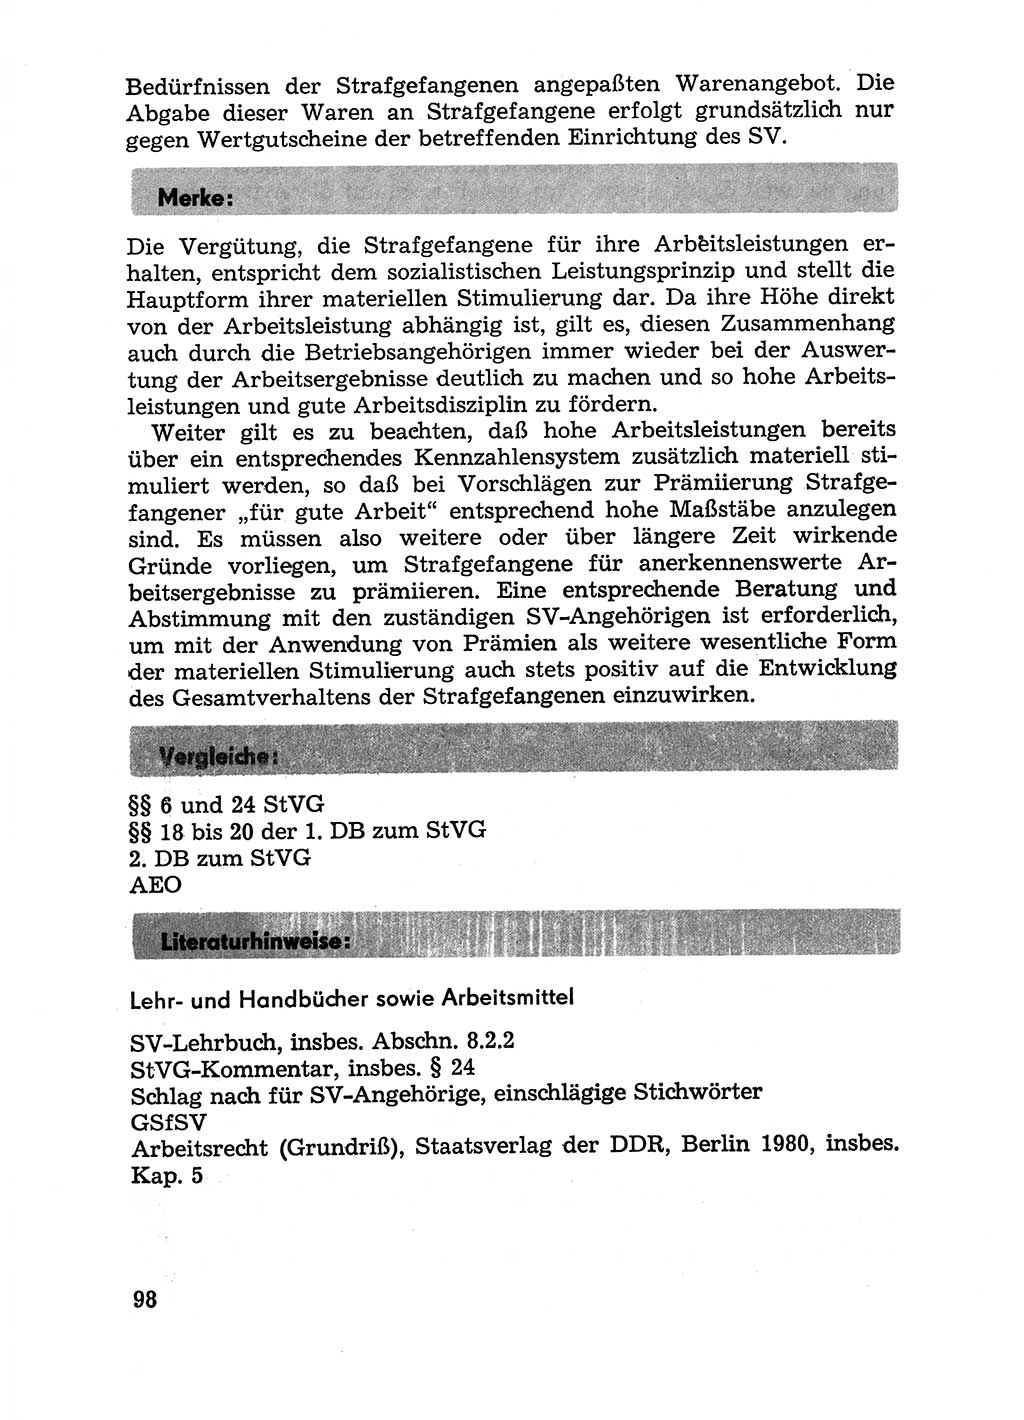 Handbuch für Betriebsangehörige, Abteilung Strafvollzug (SV) [Ministerium des Innern (MdI) Deutsche Demokratische Republik (DDR)] 1981, Seite 98 (Hb. BA Abt. SV MdI DDR 1981, S. 98)